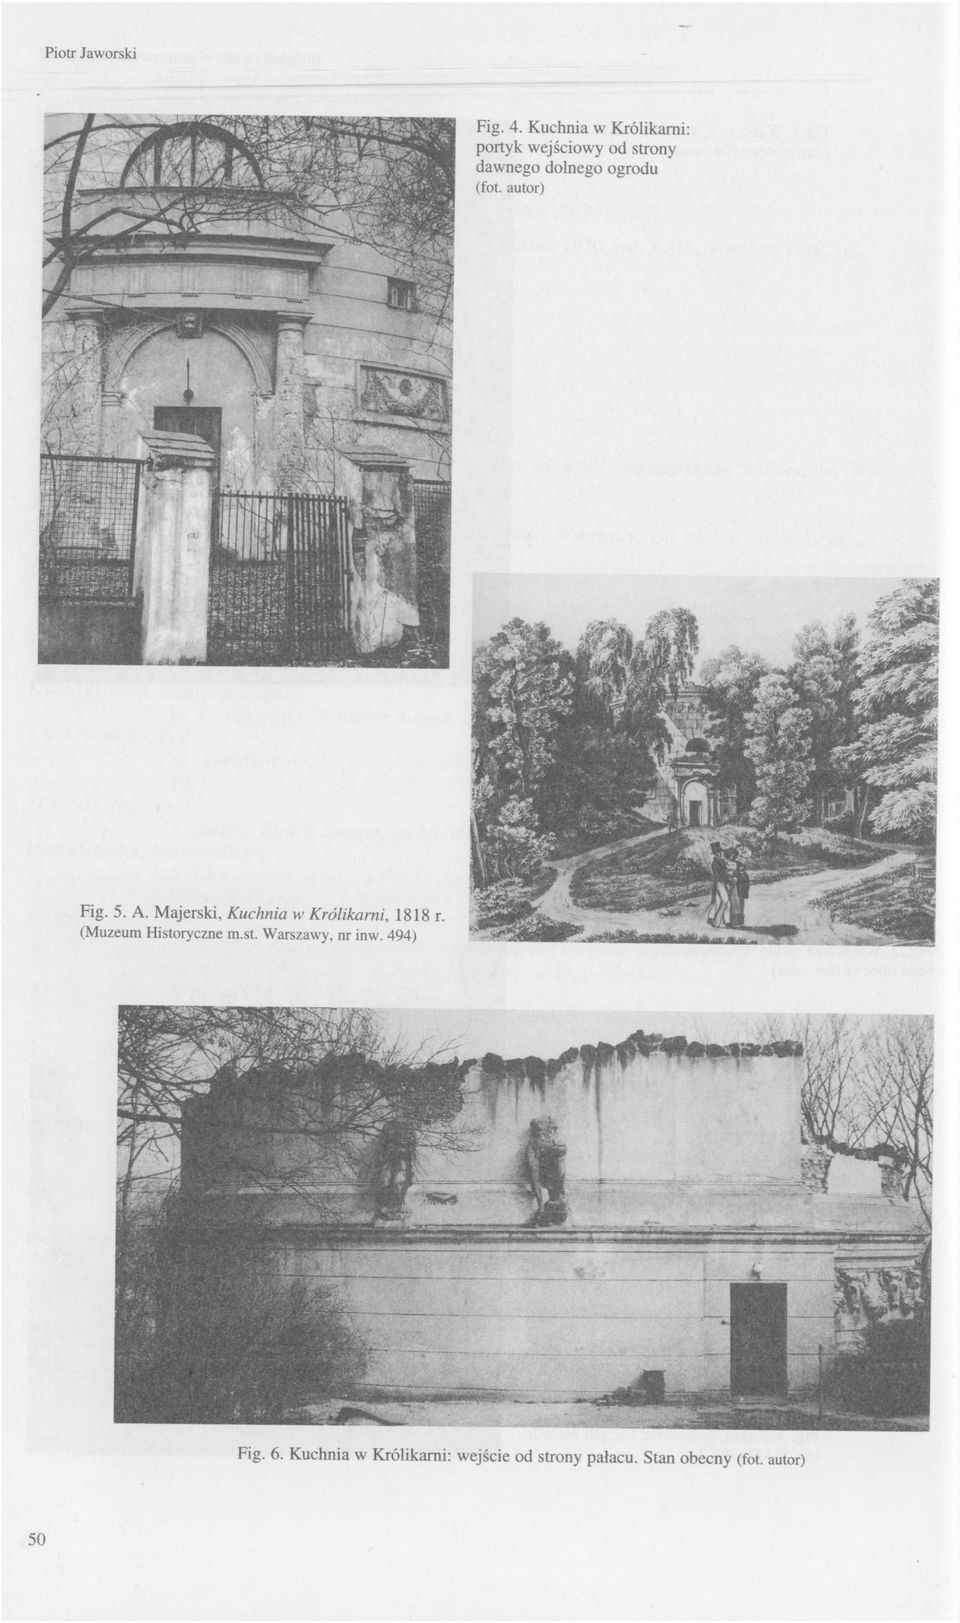 (fot. autor) Fig. 5. A. Majerski, Kuchnia w Królikarni, 1818 r.